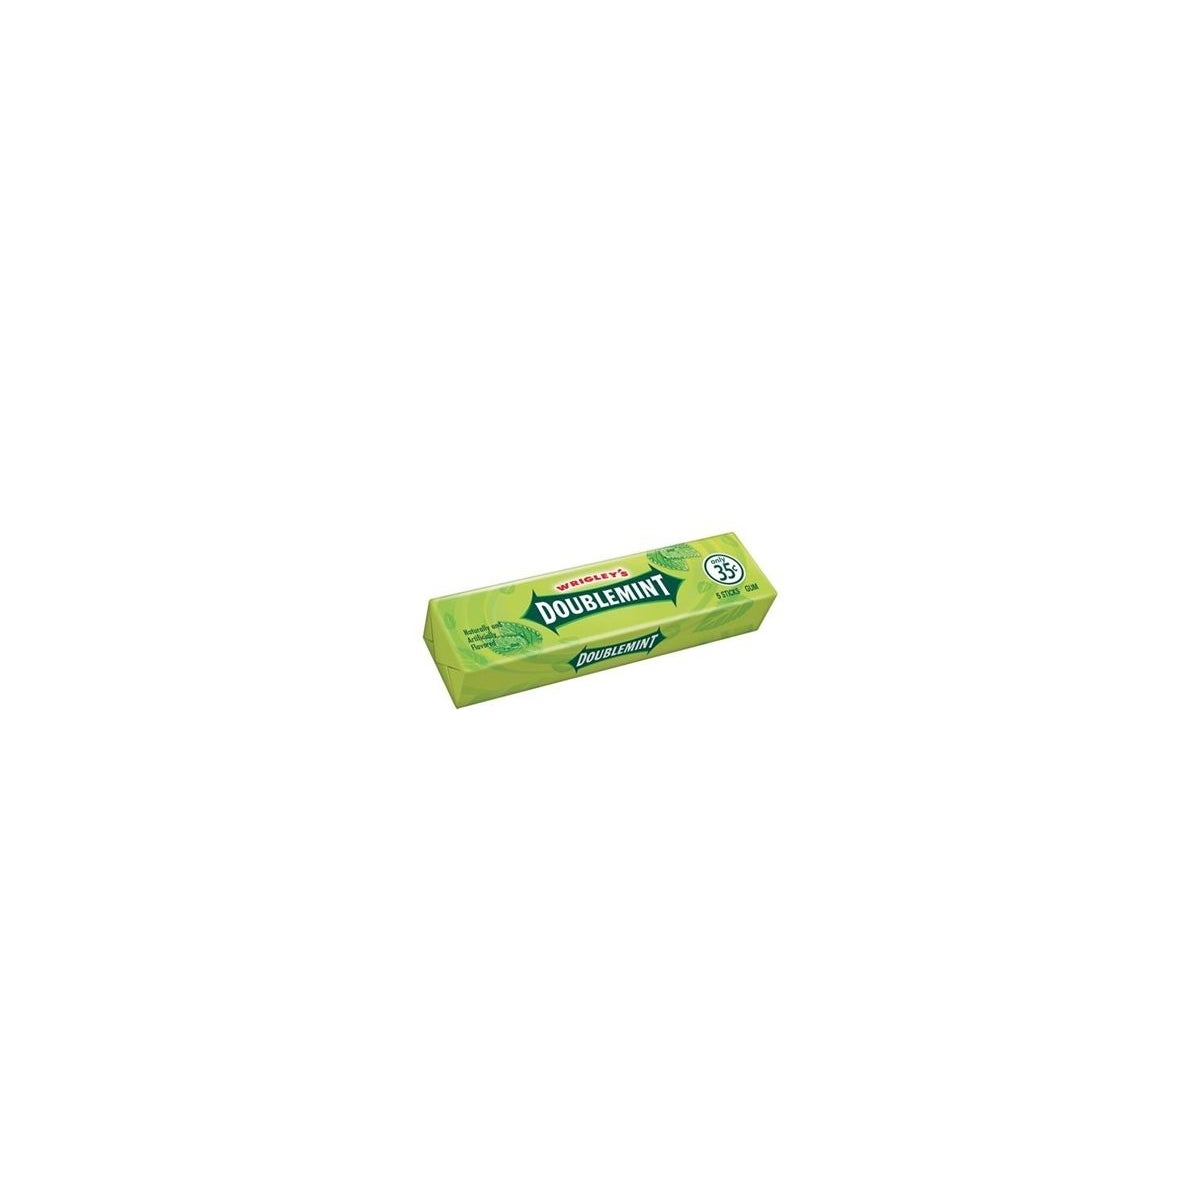 Wrigley's Doublemint Gum 5 STICK